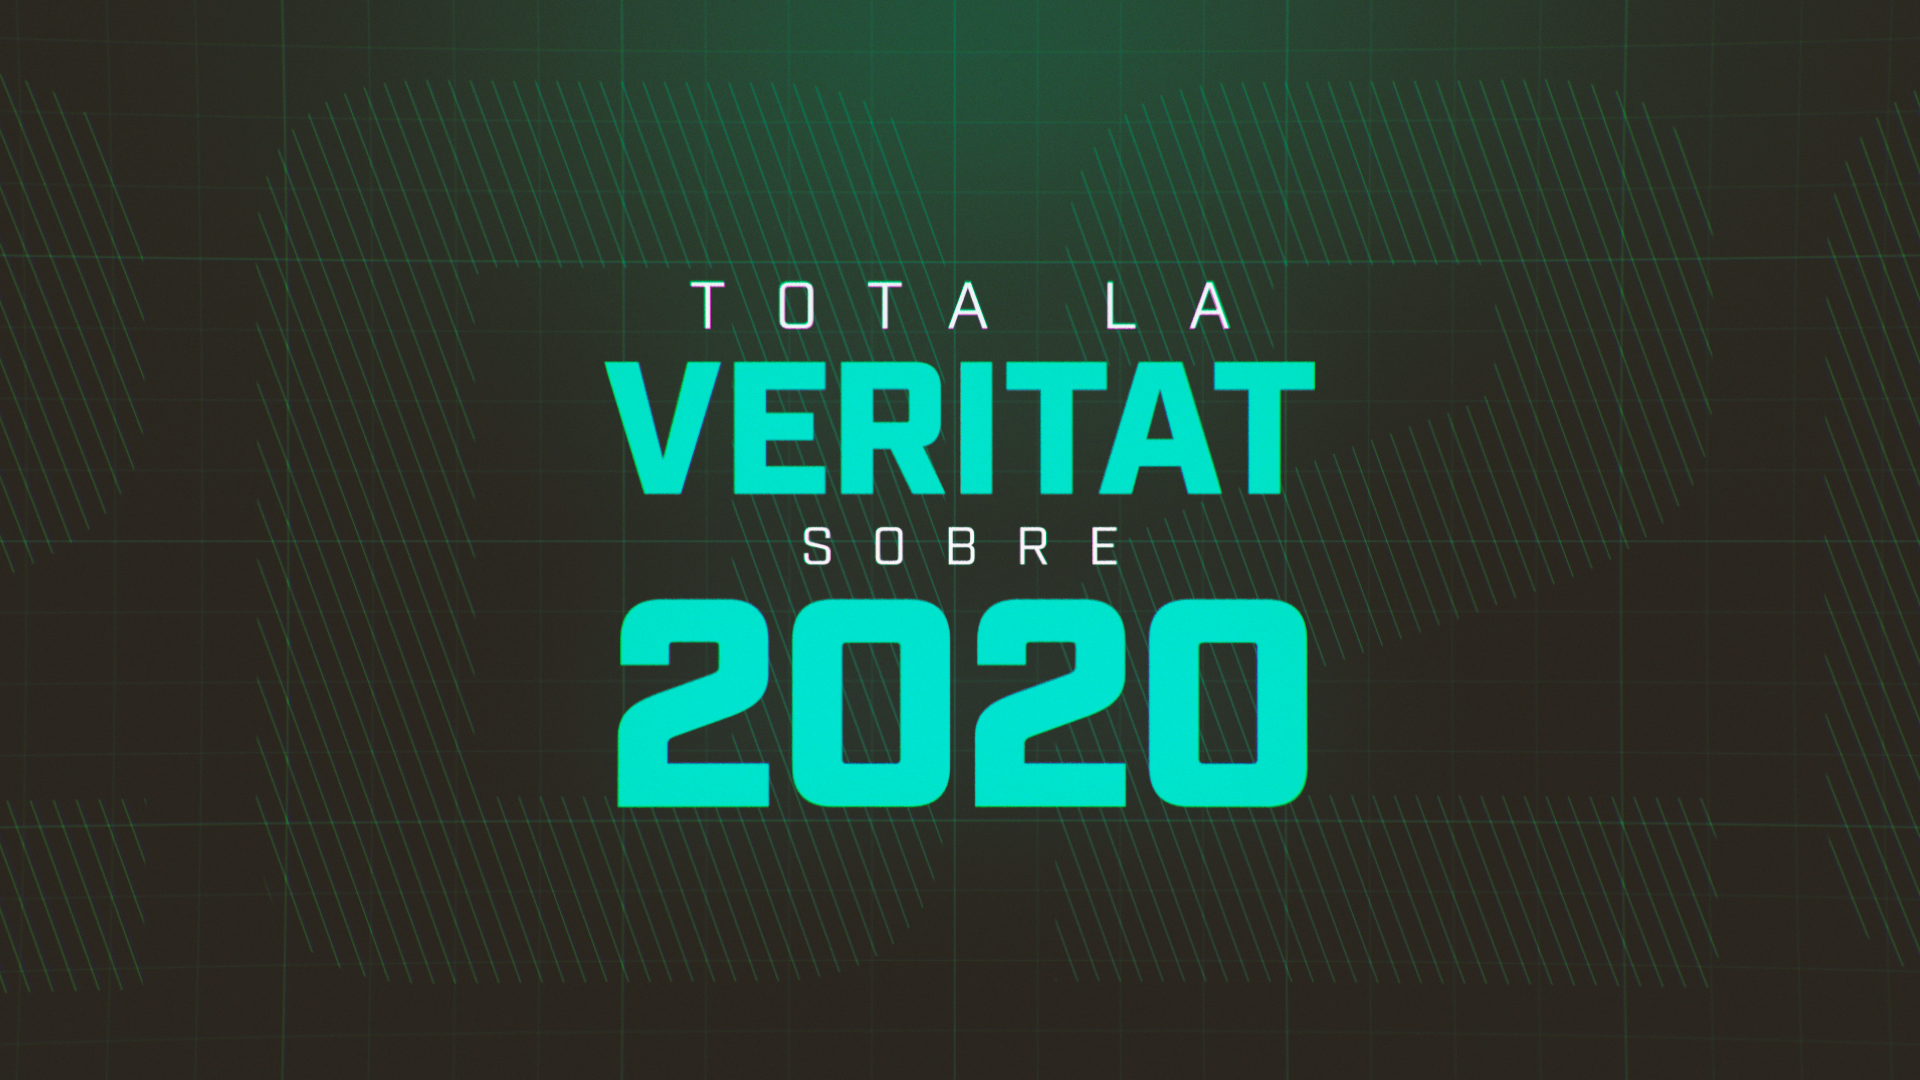 ESPECIAL%3A+Tota+la+Veritat+Sobre+2020